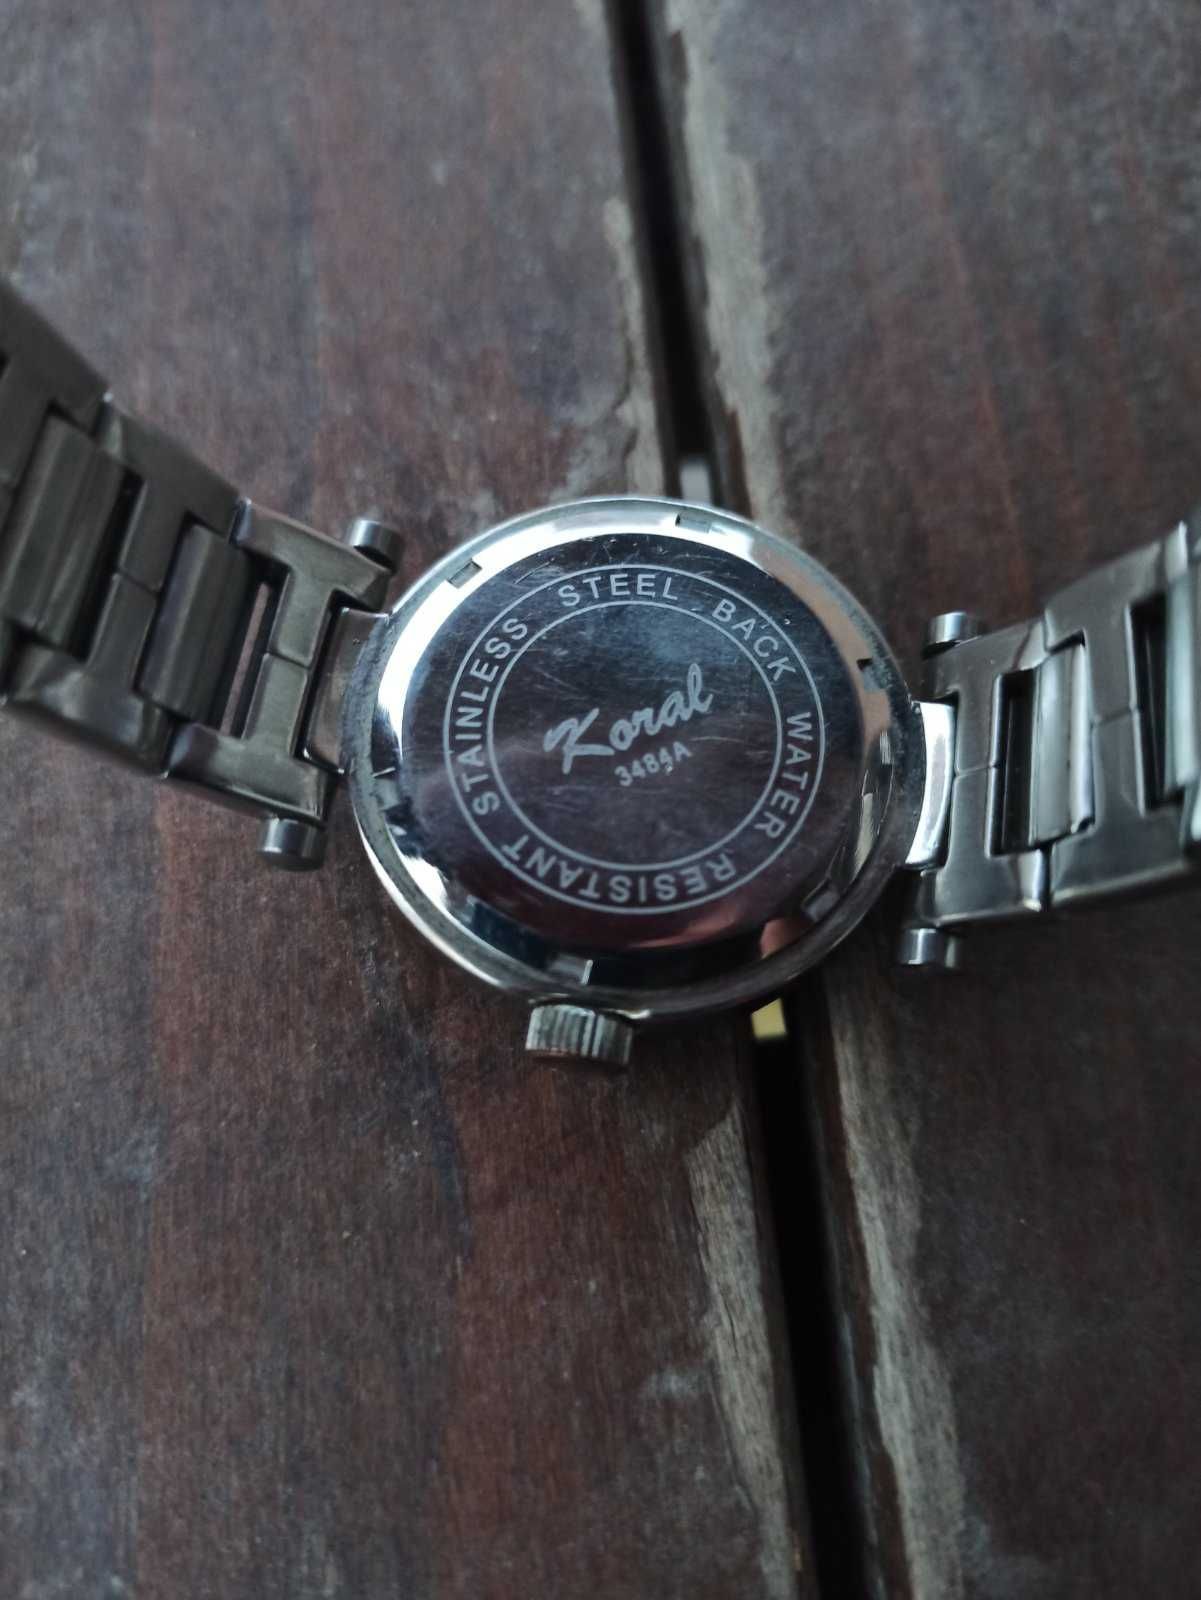 Часовник Koral, модел 3484А, дамски, винтидж